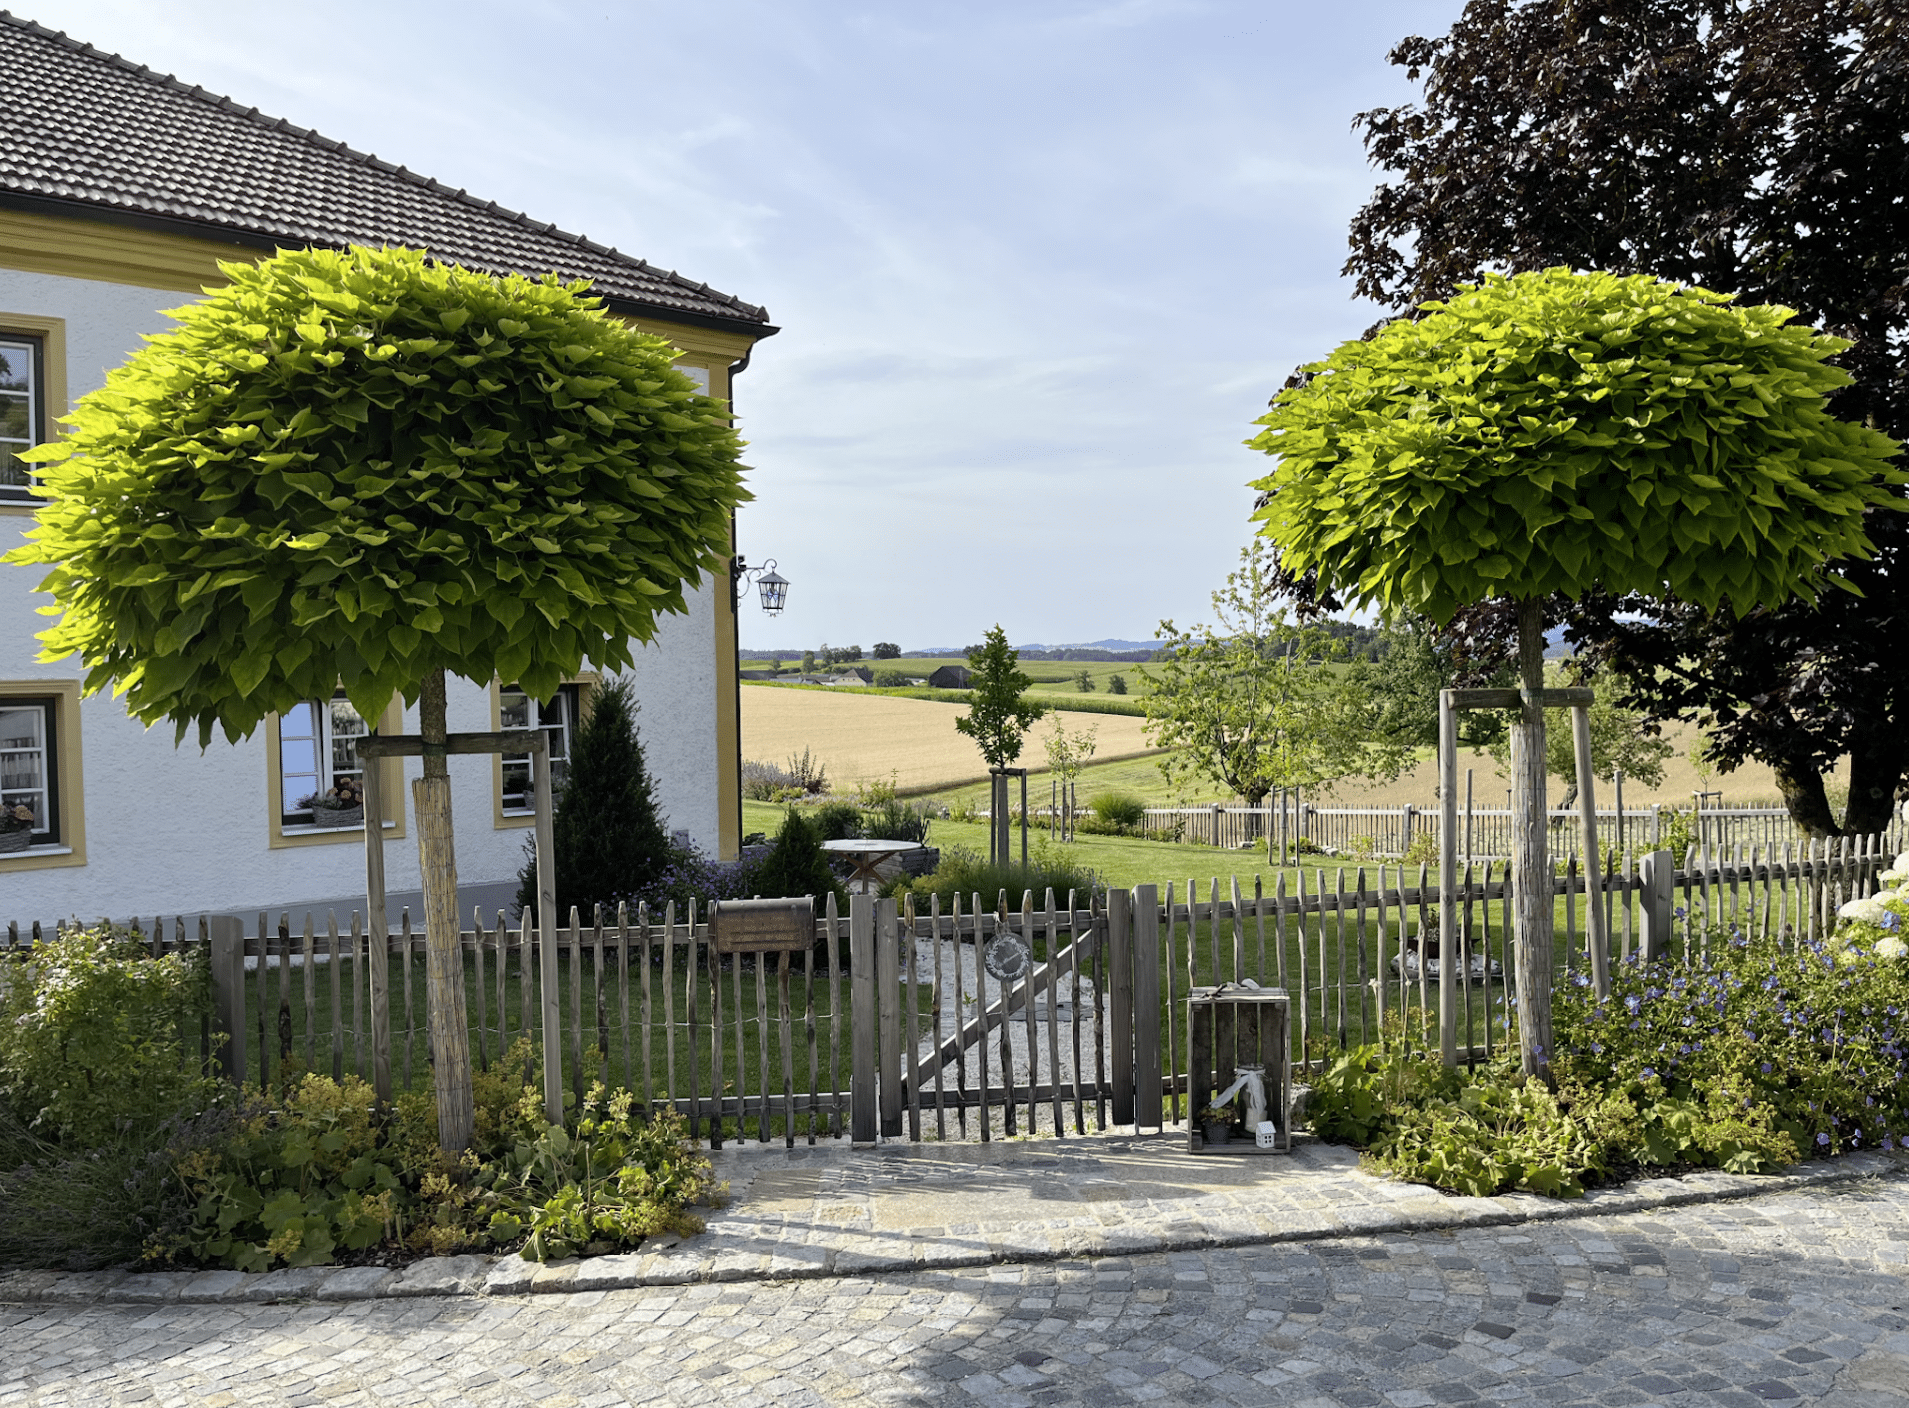 Gartenbau Schmid zeigt den Garten eines Hauses mit Zaun, mehreren Obstbäumen, Pflastersteine und gestutzte Bäume.